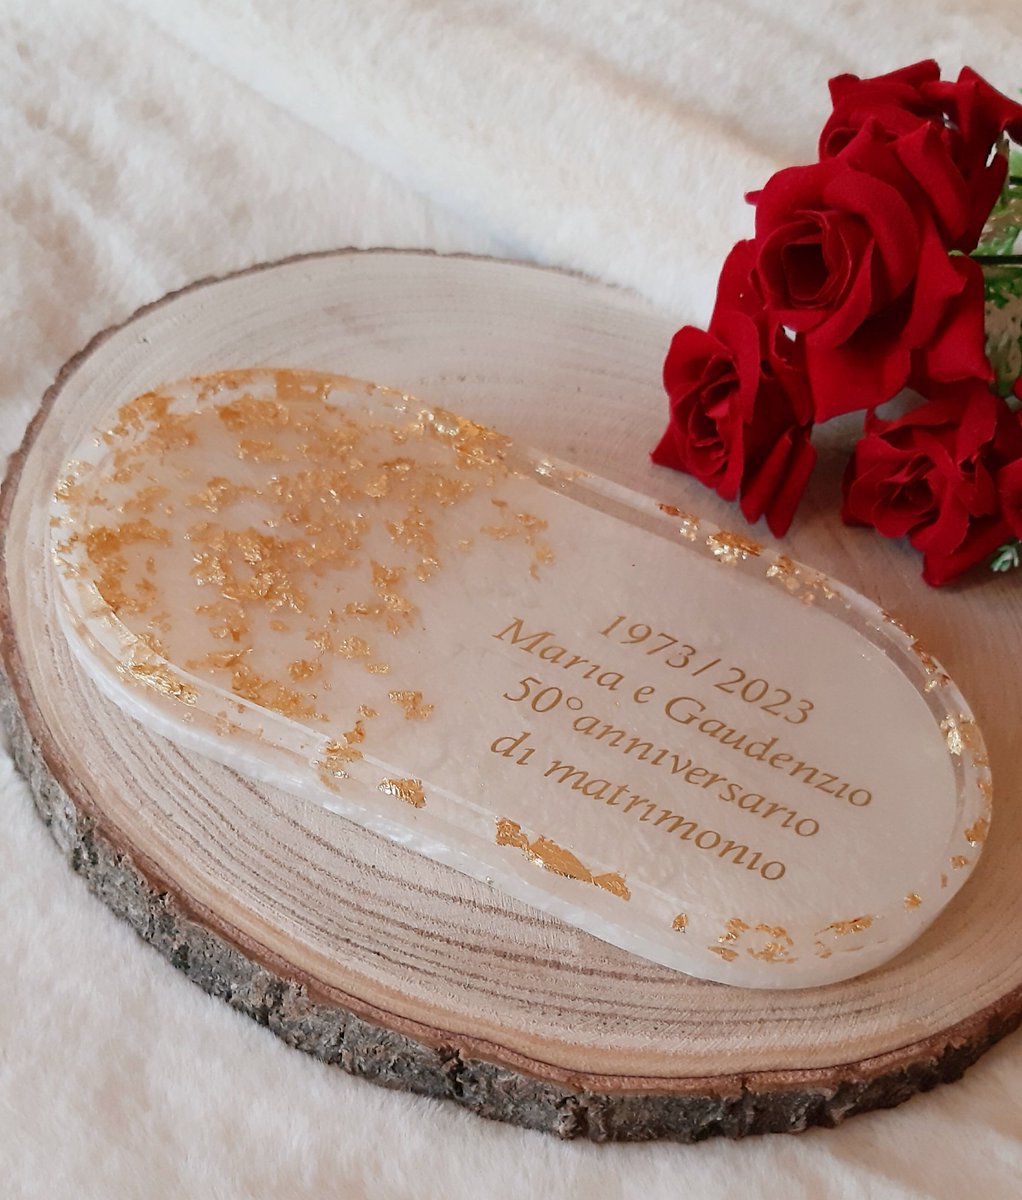 Svuota tasche in resina. 
🌹Fatto a mano e personalizzato
🌹Per info e ordini contattatemi 
🌹Spedizione in tutta Italia 
#resina #regali #personalizzazione #fattoamano #idearegalo #elleerrecreazioni